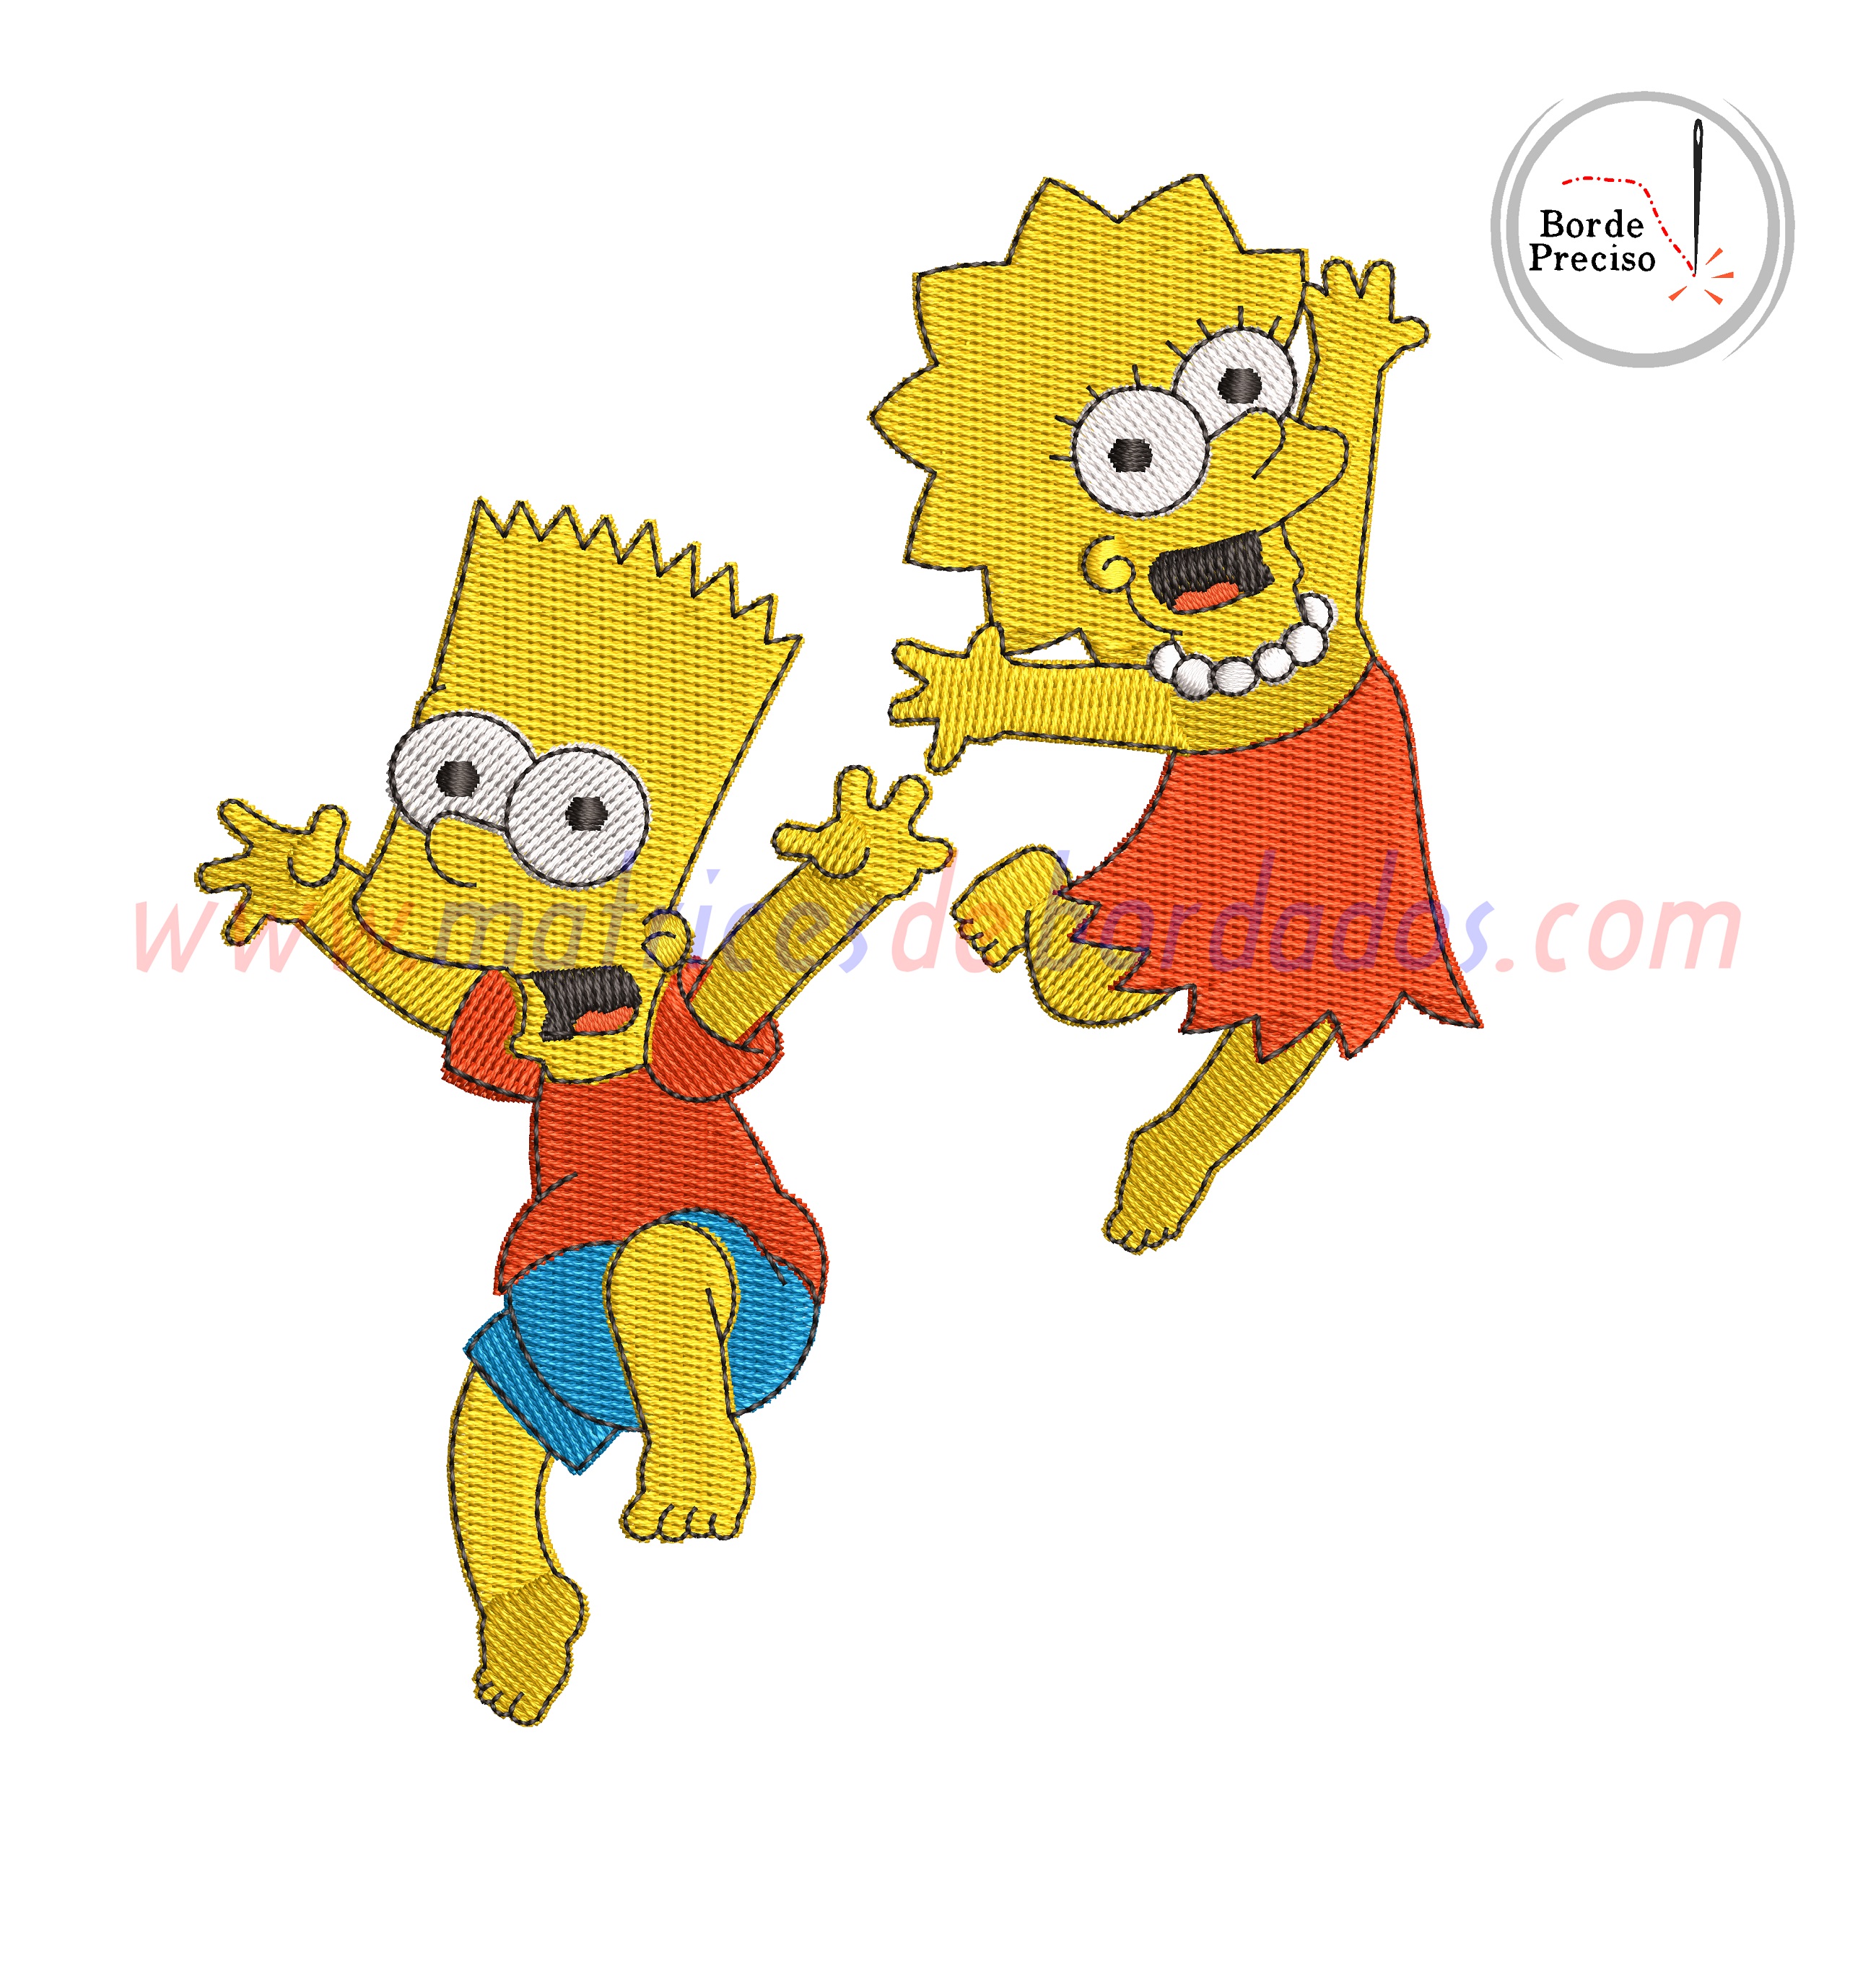 GZ56JH - Bart y Lisa